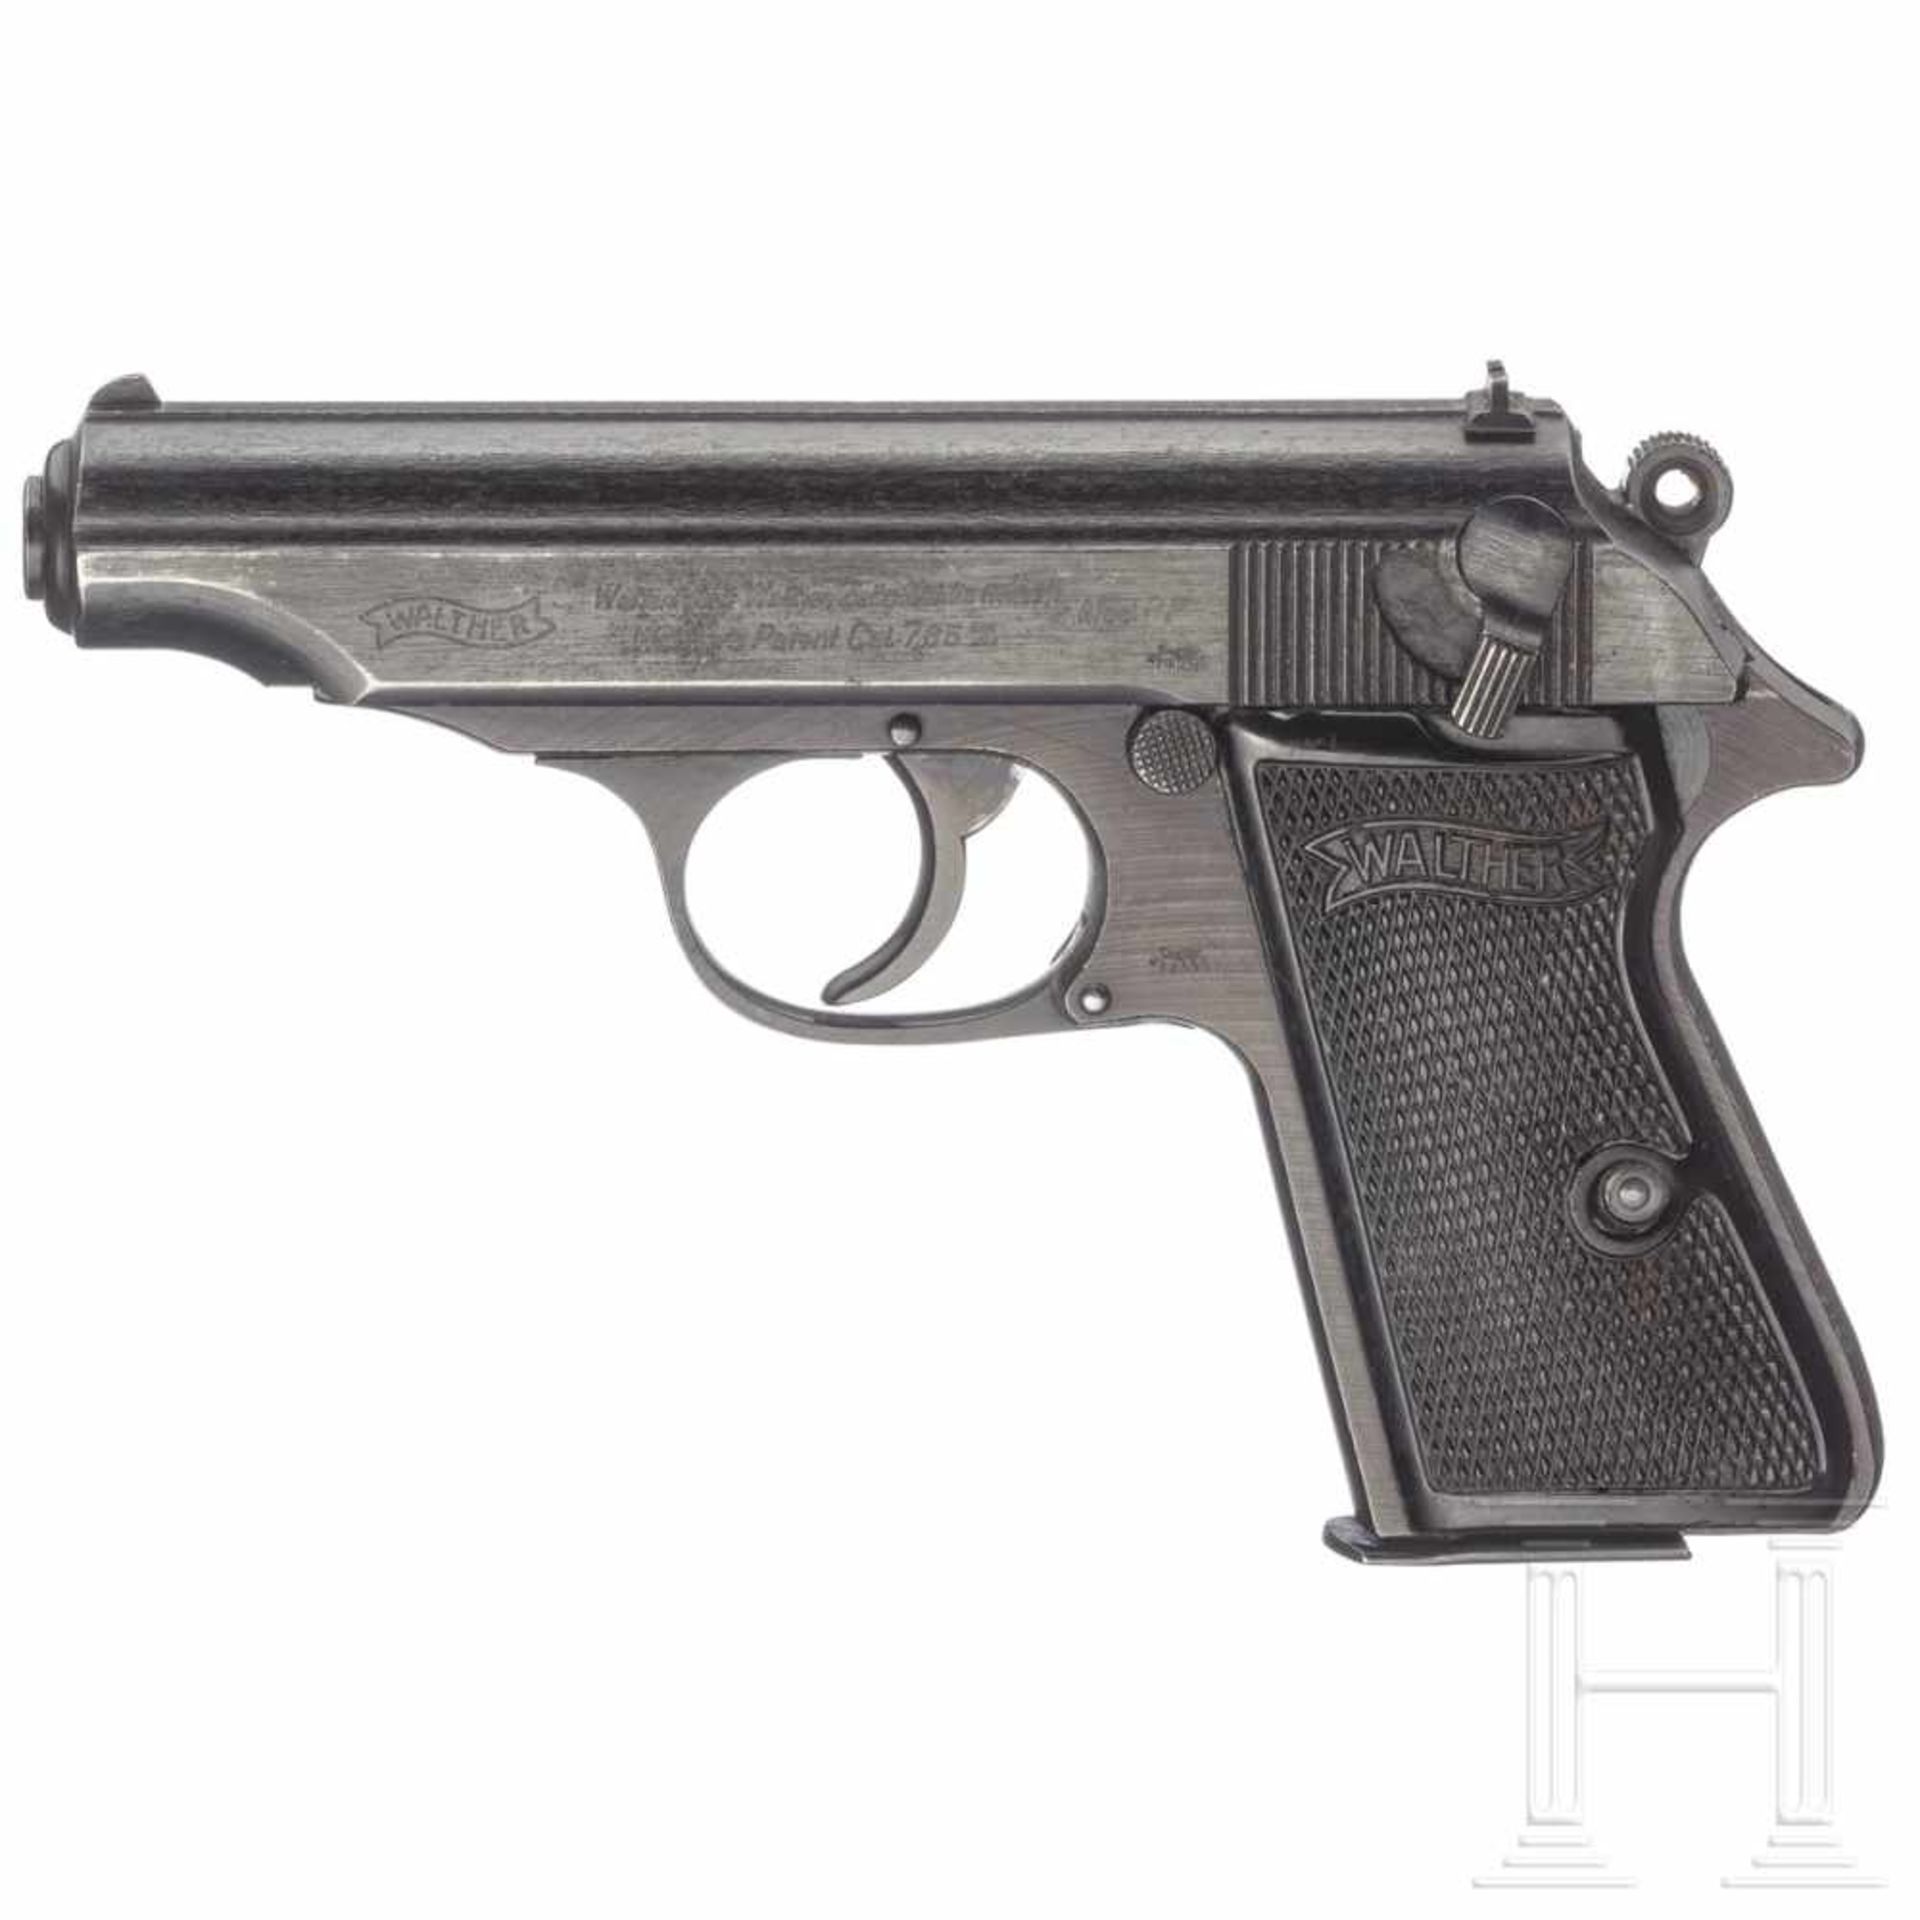 Walther PP, ZMKal. 7,65 mm Brown., Nr. 284754P, nummerngleich. Blanker Lauf. Achtschüssig.